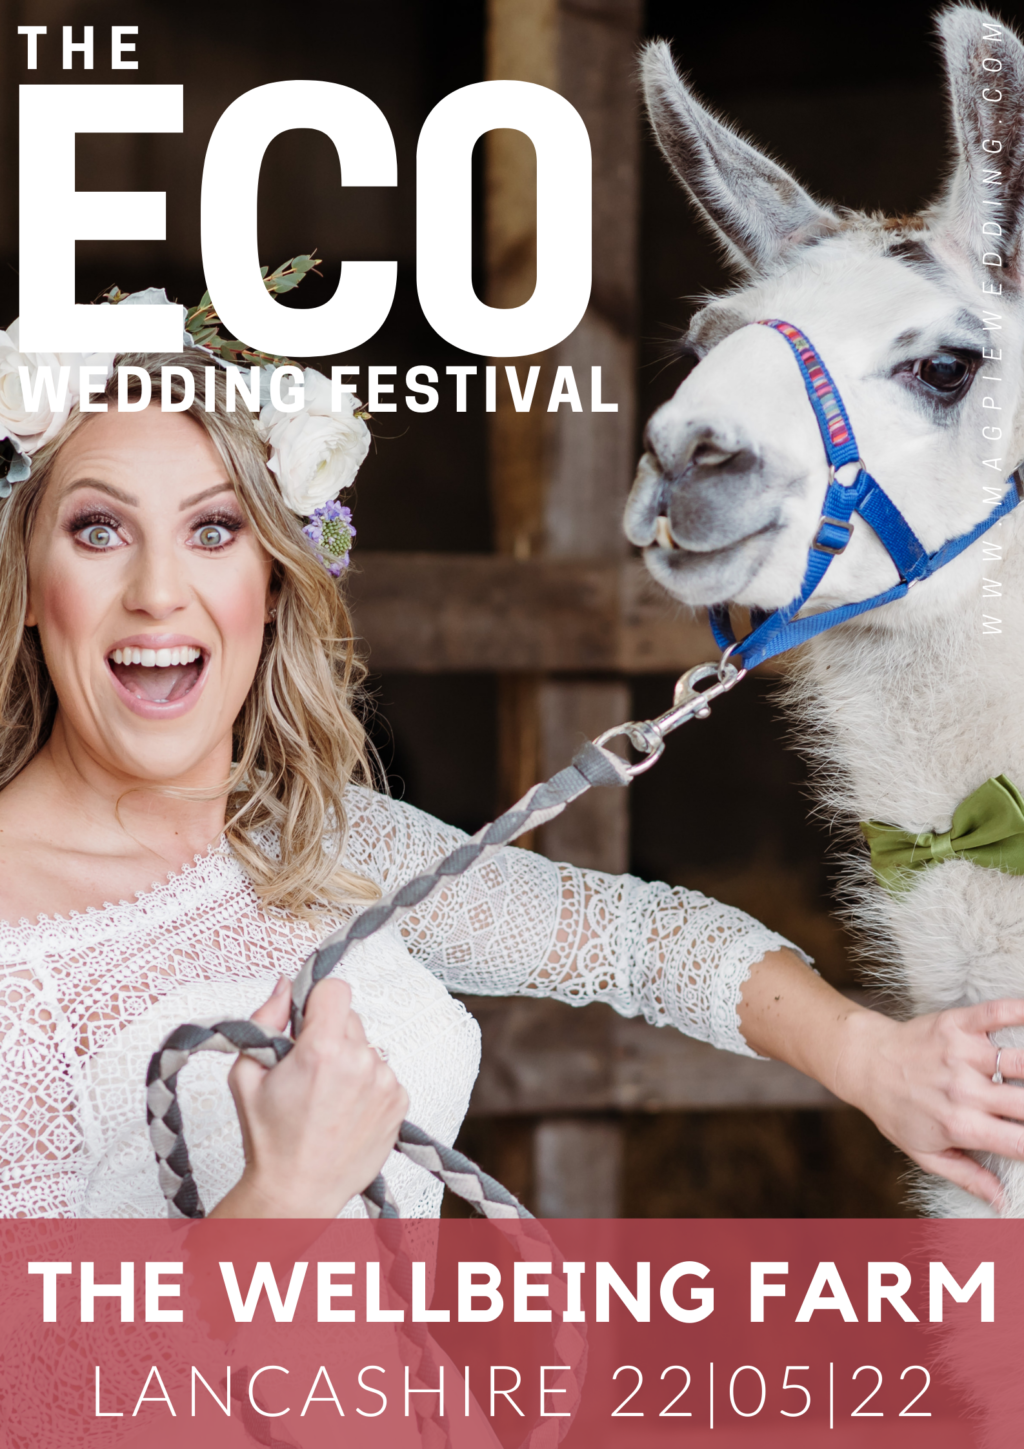 The ECO Wedding Festival Wellbeing Farm